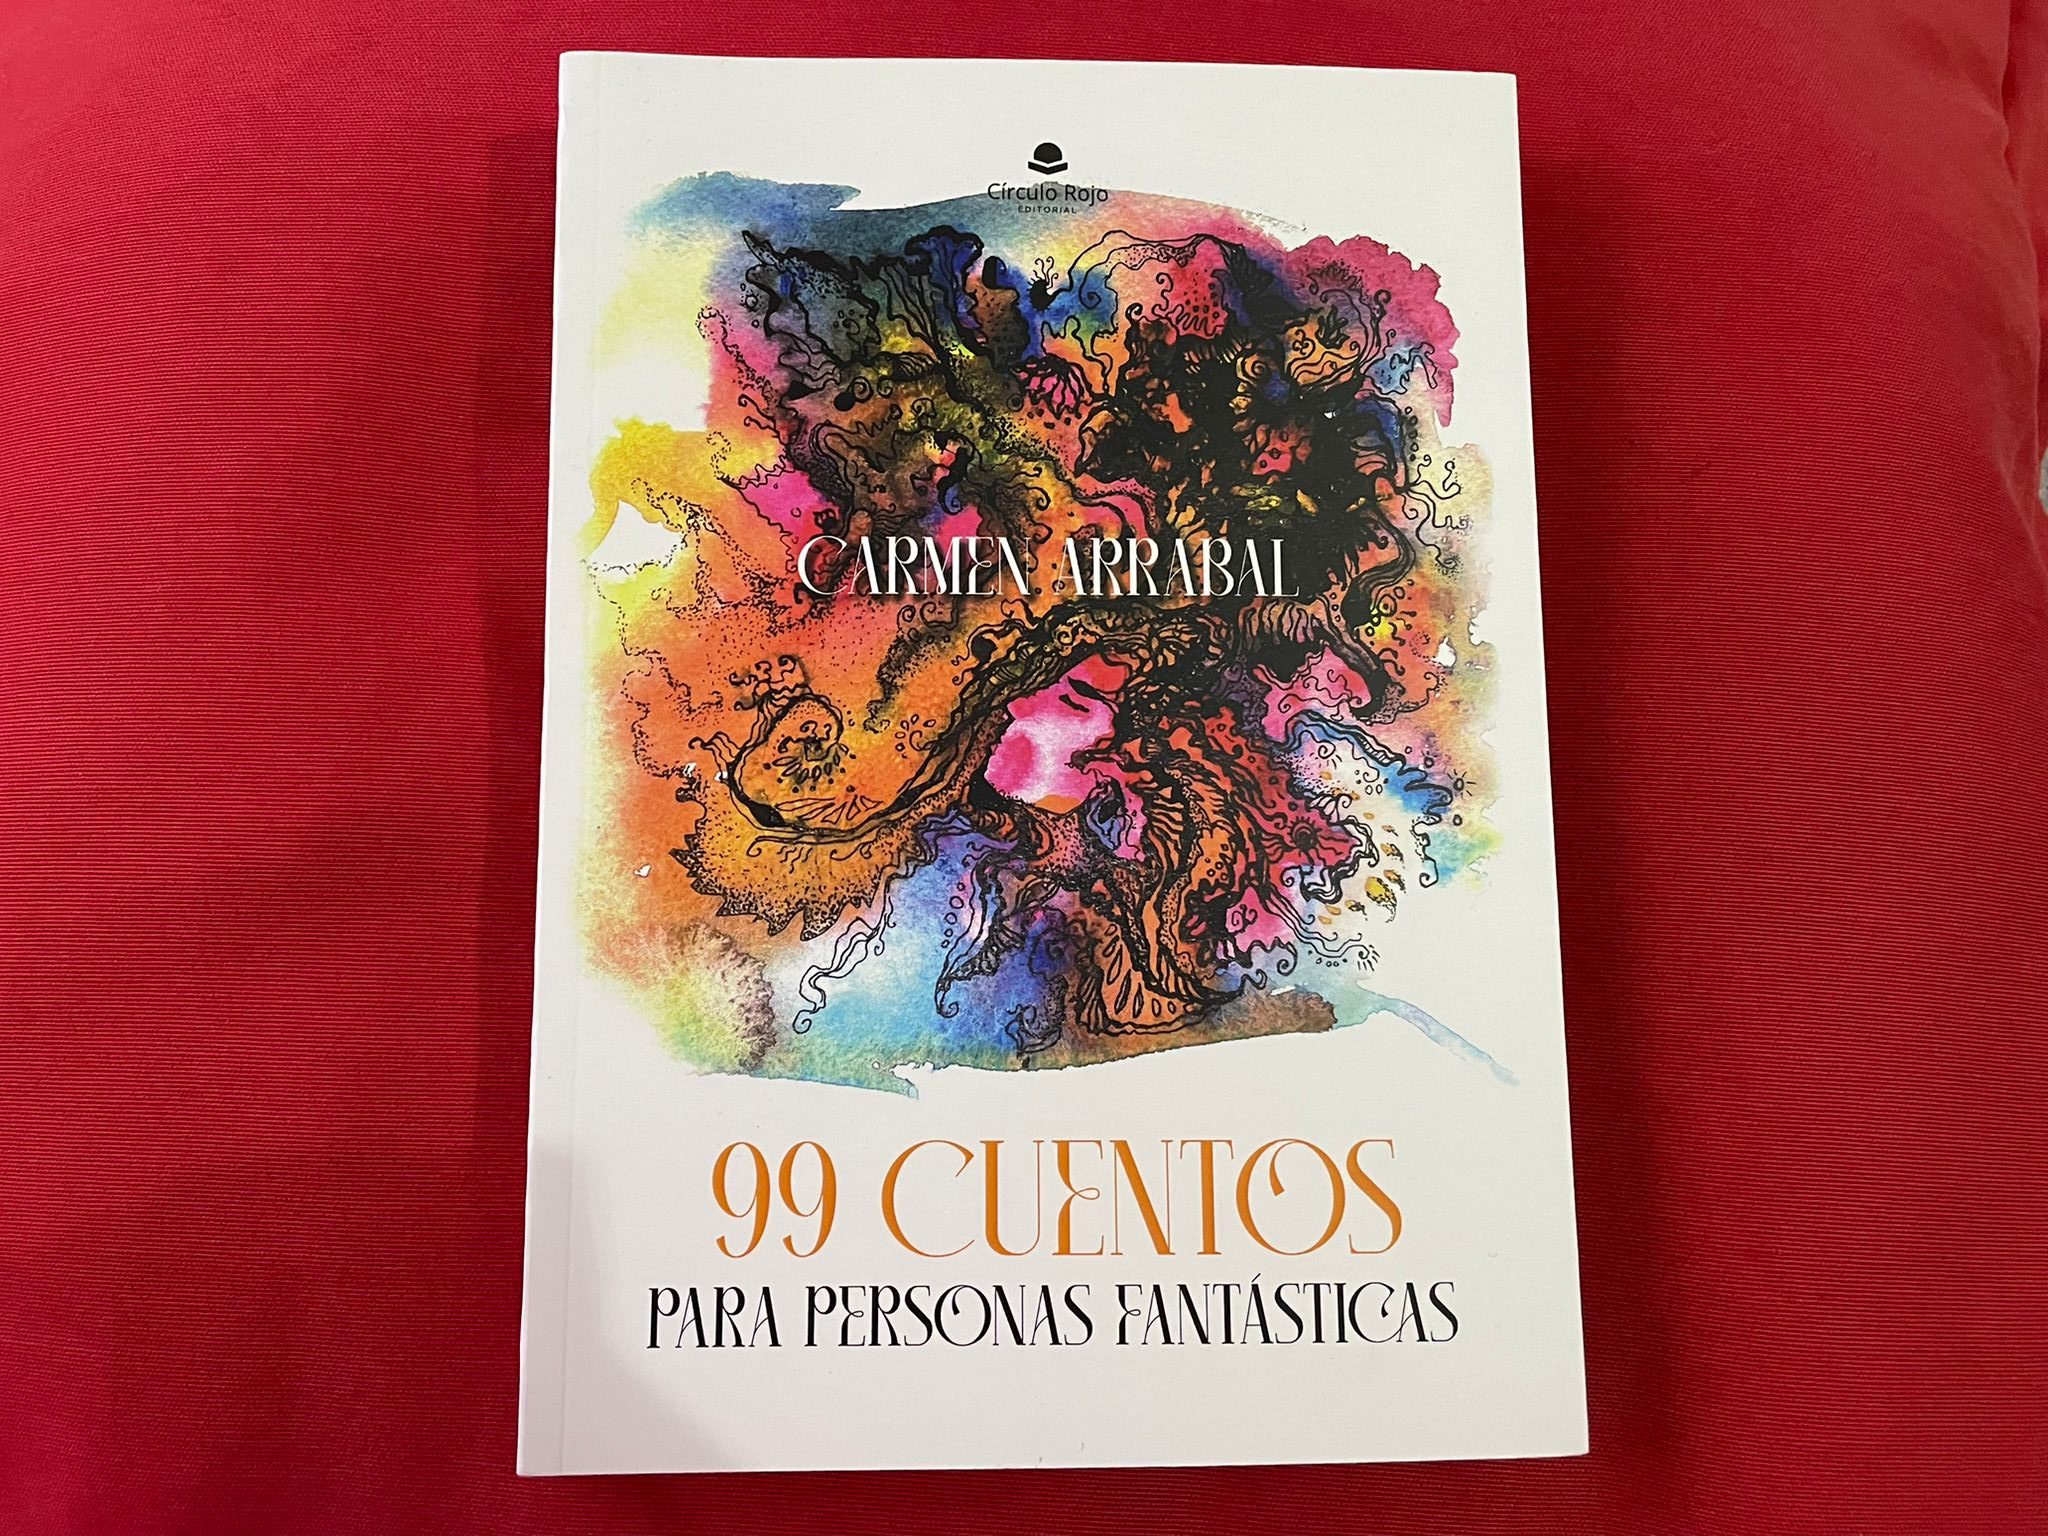 Carmen Arrabal "99 Cuentos para personas fantásticas"